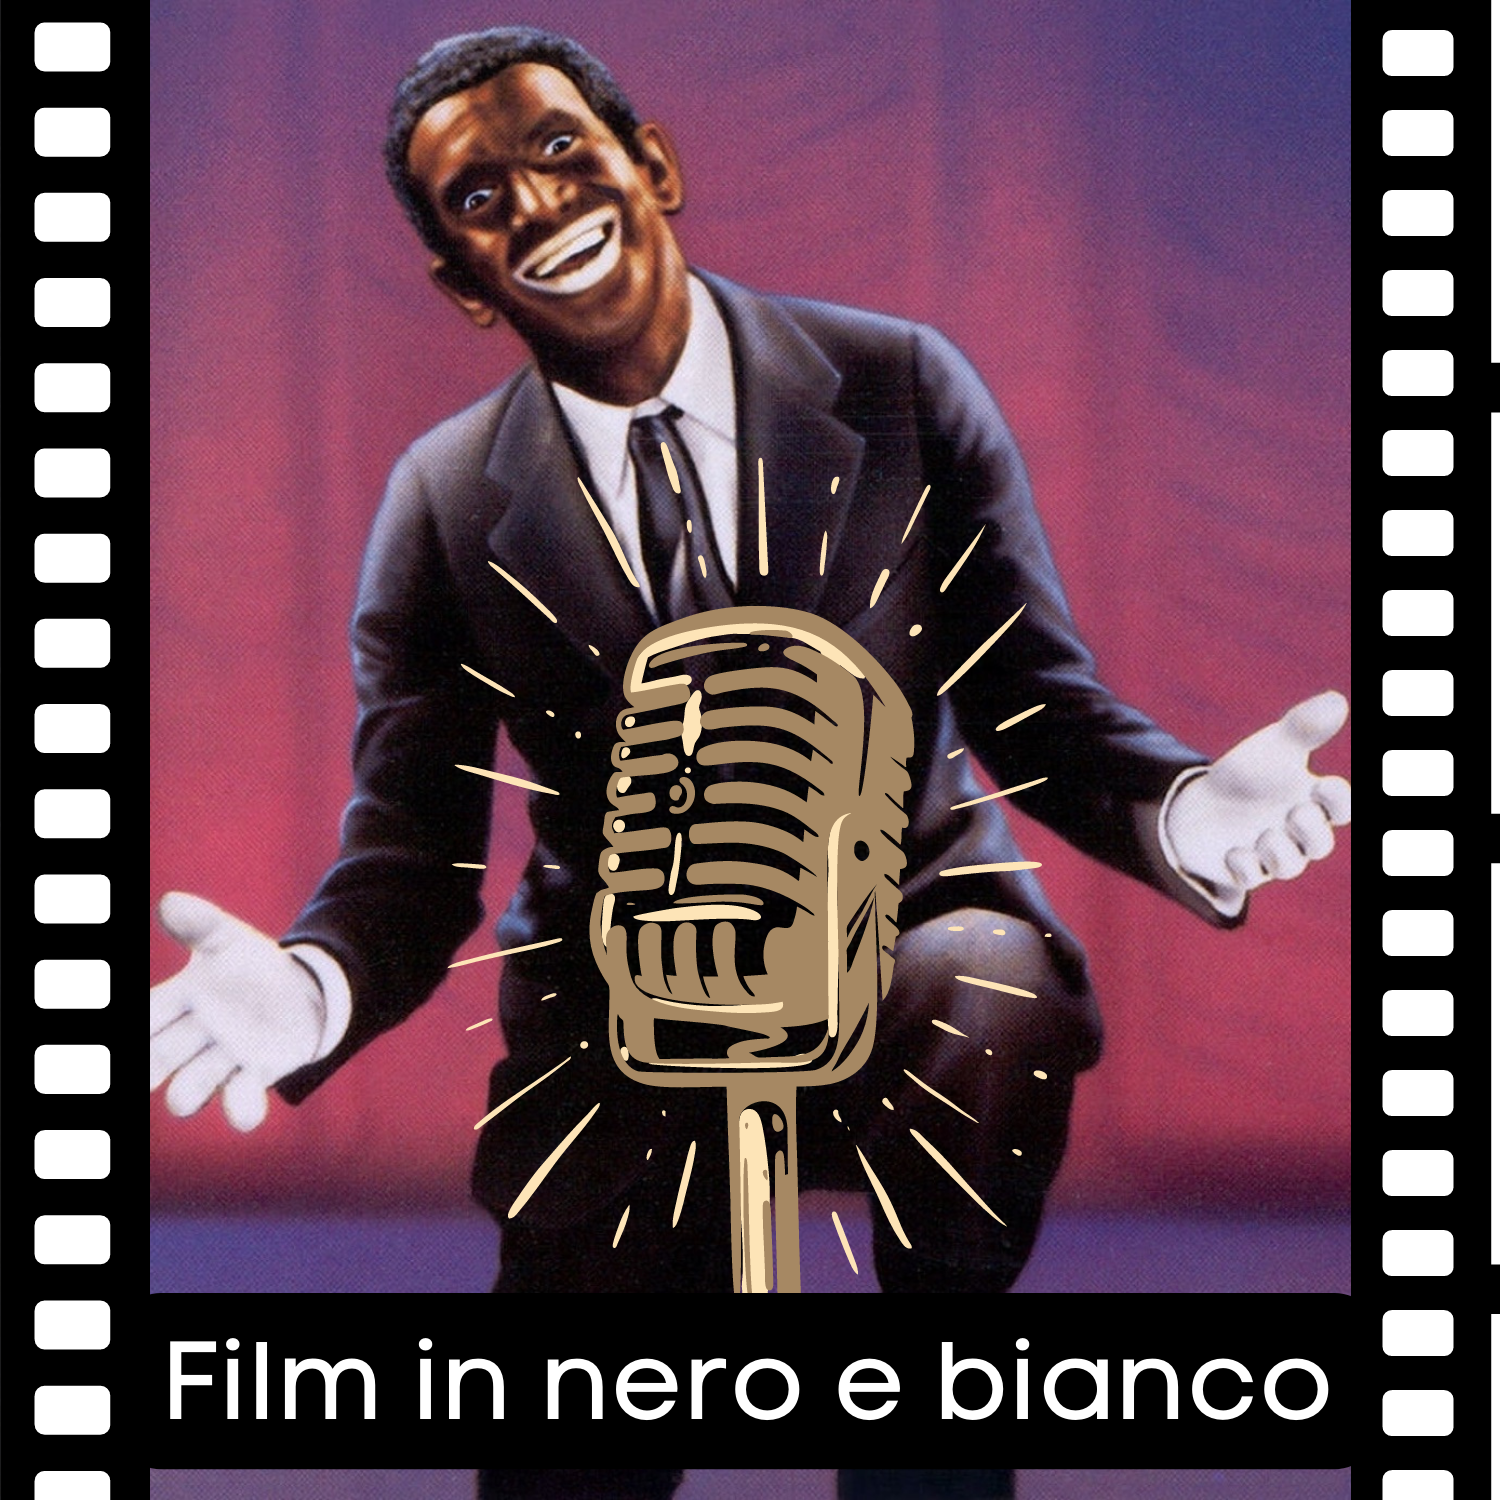 Film in nero e bianco- Il podcast su cinema e razzismo